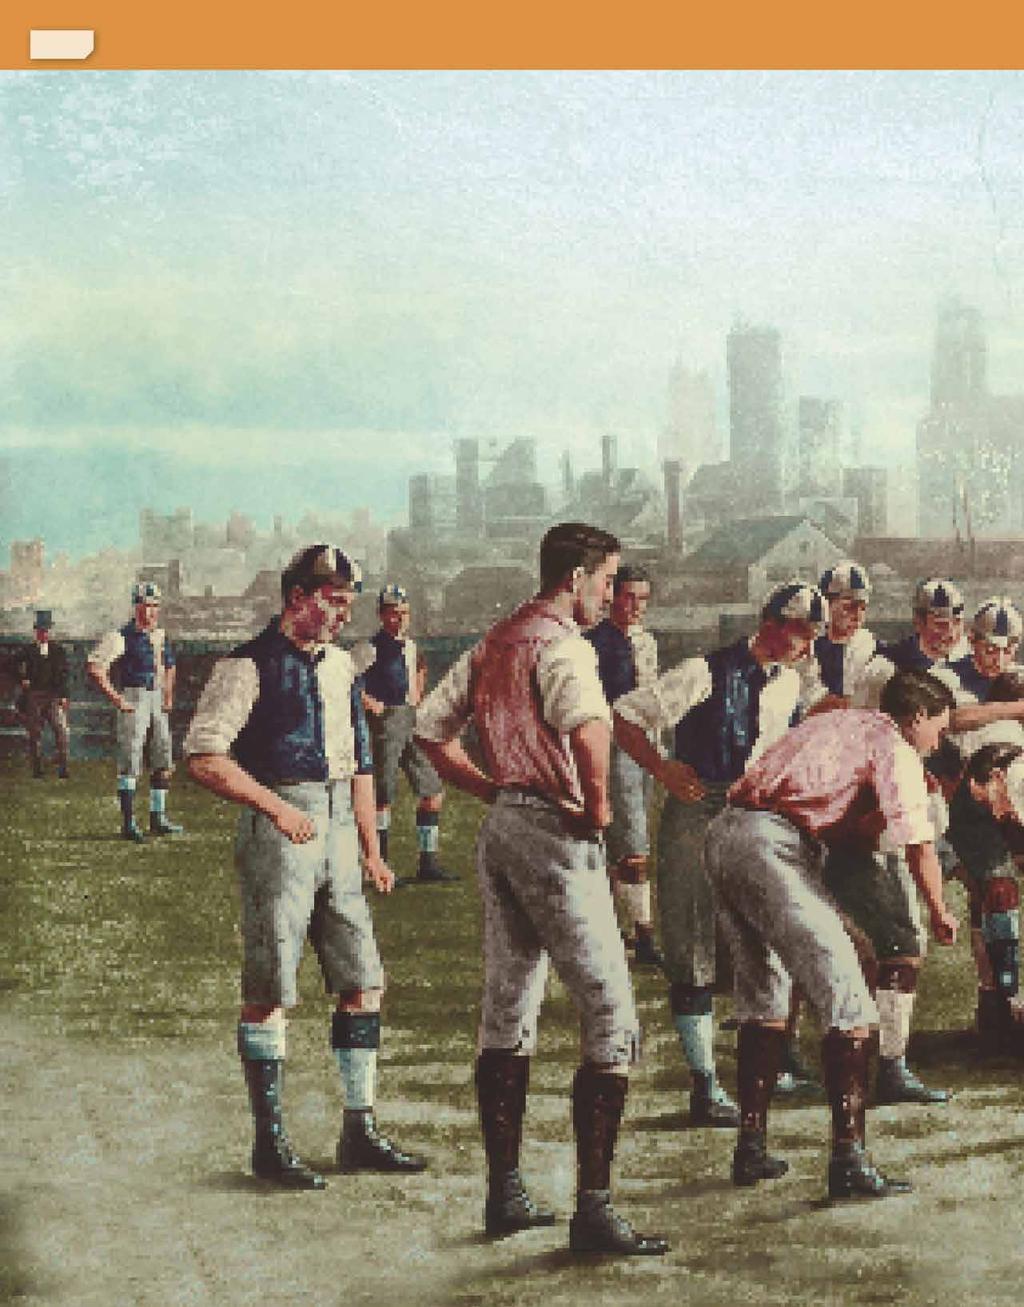 8 Megszületett a labdarúgás Angliai bentlakásos iskolákban számos, a futballhoz hasonló játékot játszottak a 19. század közepén.